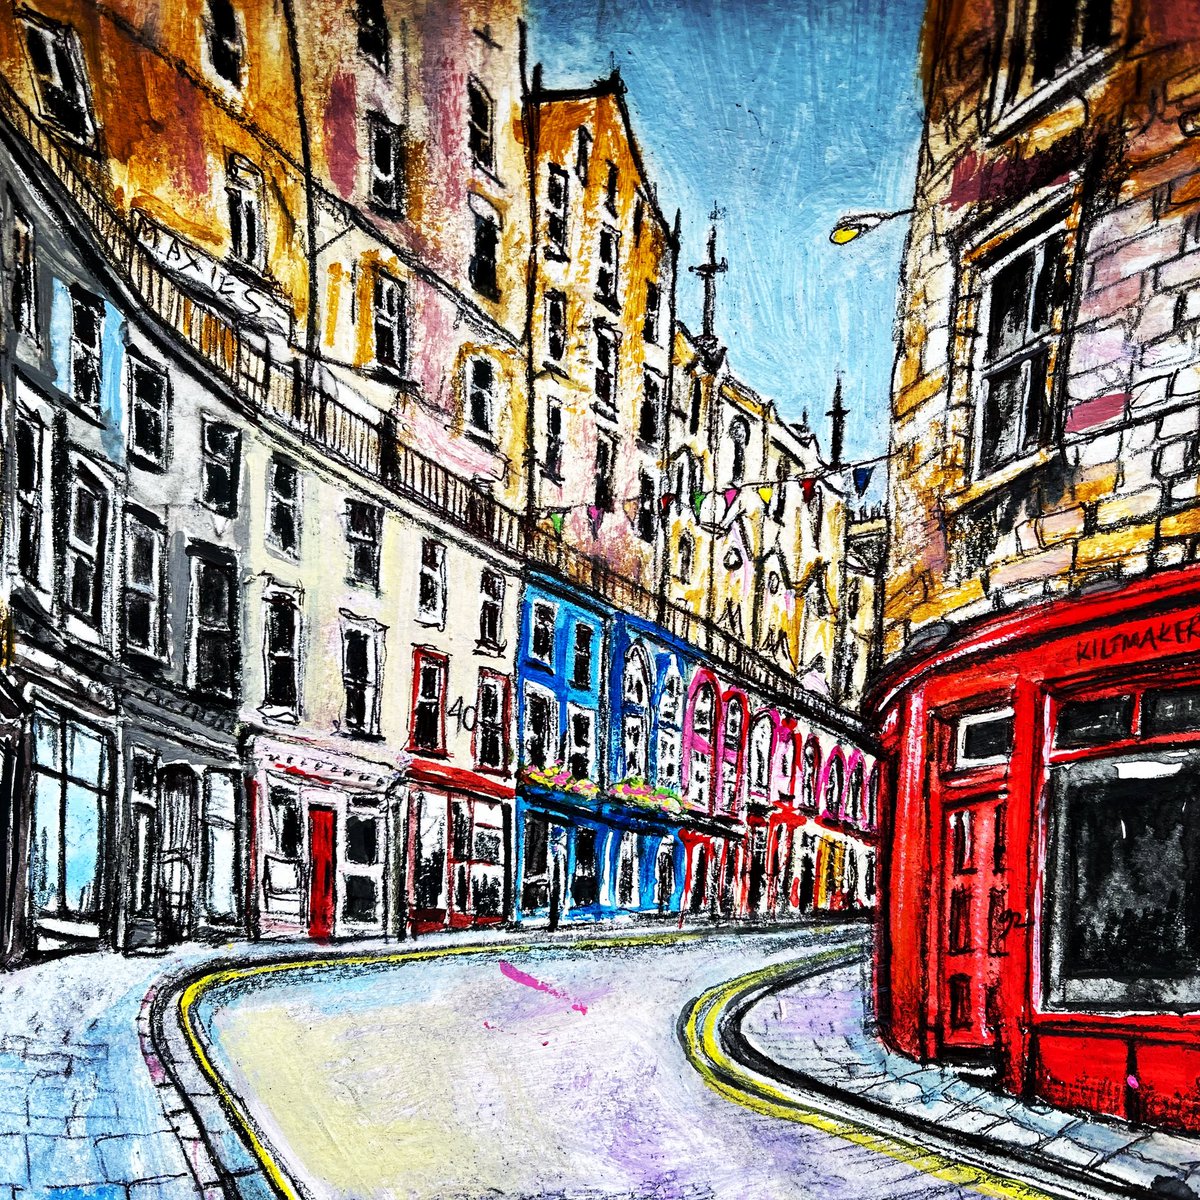 Victoria Street, Edinburgh 
•
•
•
#Victoriastreet #Edinburgh #Scotland #artpromo #YourBizHour #womanbizhour #HANDMADELINK #HandmadeHour #Inbizhour #usk #urbansketcher #draw365 #artboost